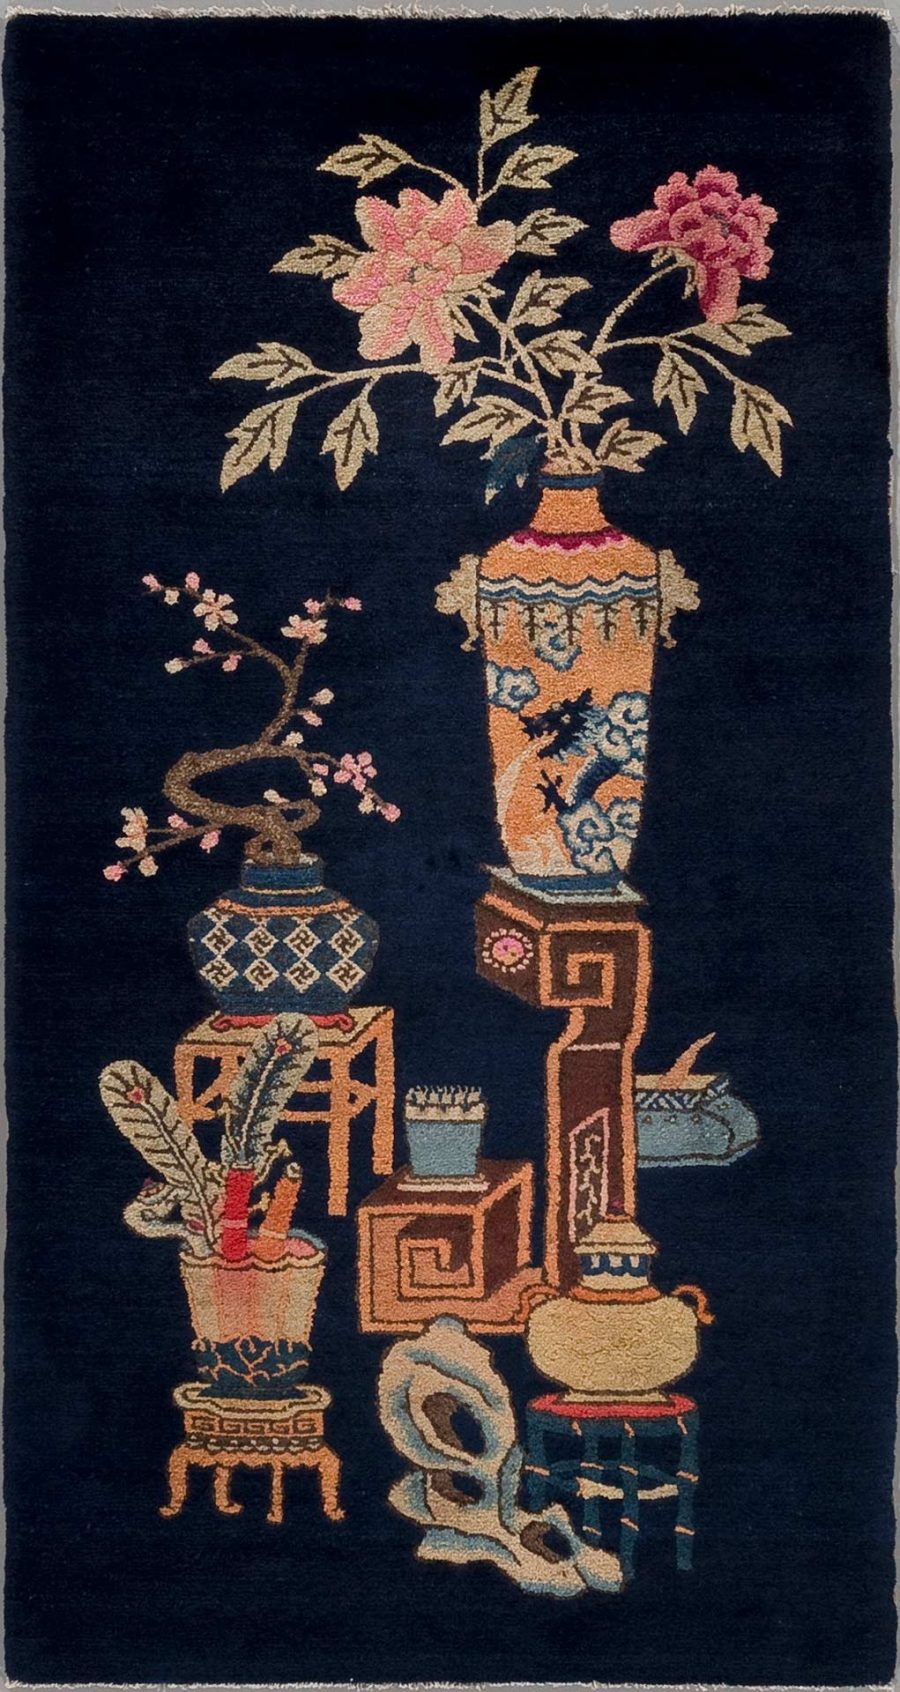 Antike asiatische Vasen und dekorative Objekte aufgestickt auf einem dunkelblauen Teppich mit floralen Motiven und Mustern.